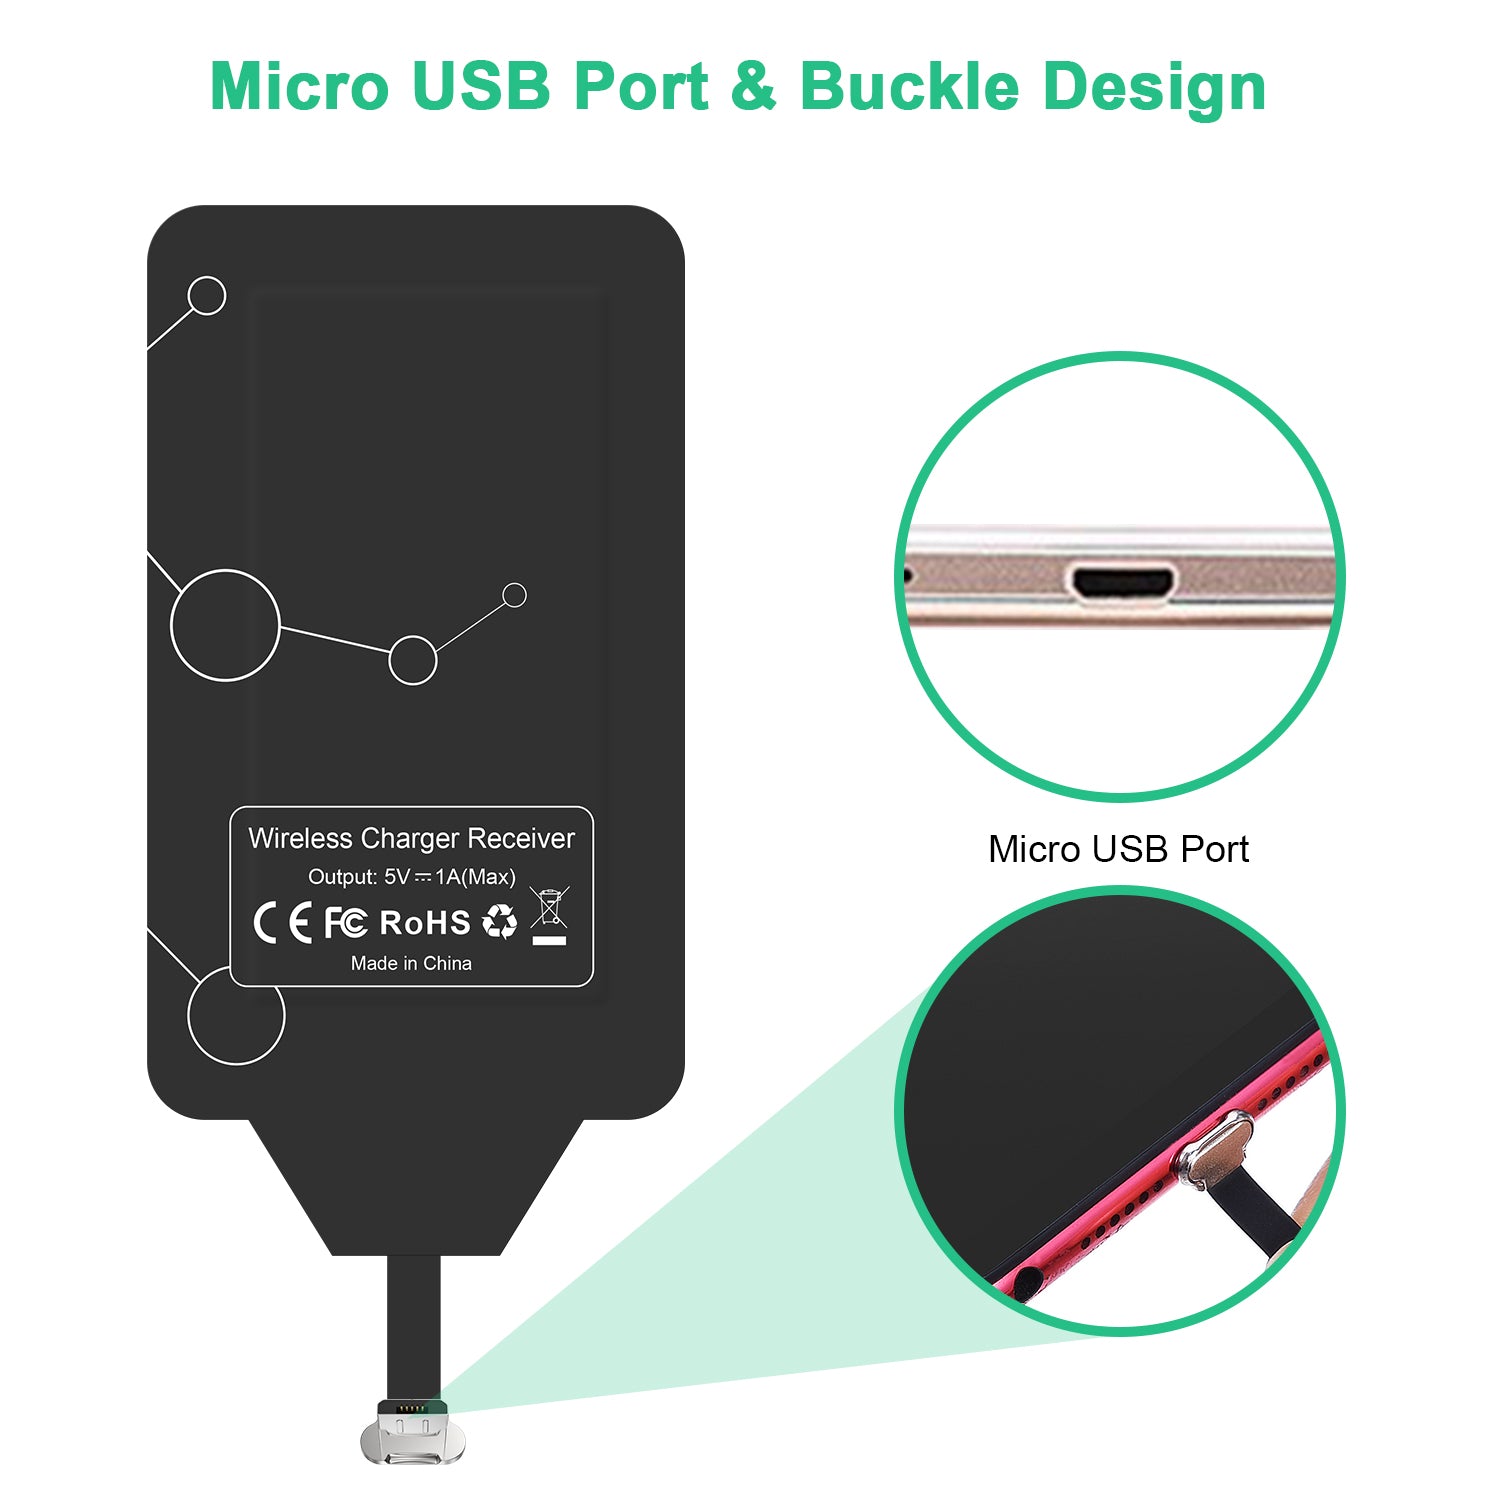 WP-MICRO Choetech Puce de module de patch de récepteur de charge sans fil Qi ultra mince compatible avec tous les appareils micro USB à côté étroit